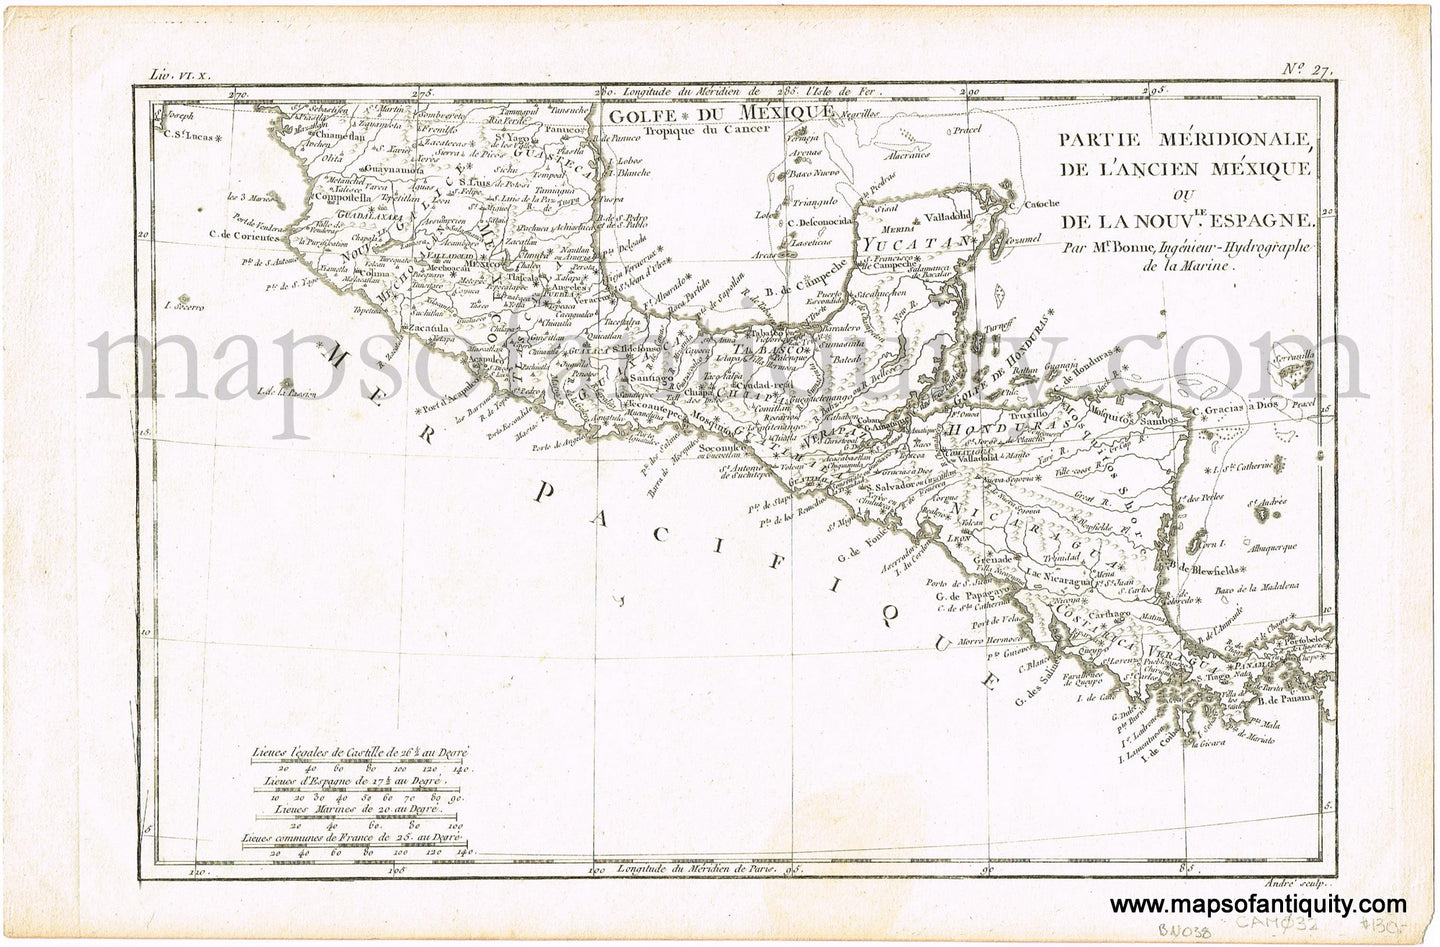 Antique-Hand-Colored-Map-Partie-meridionale-de-l'ancien-Mexique-ou-de-la-Nouvelle-Espagne.-North-America-Mexico-1780-Raynal-and-Bonne-Maps-Of-Antiquity